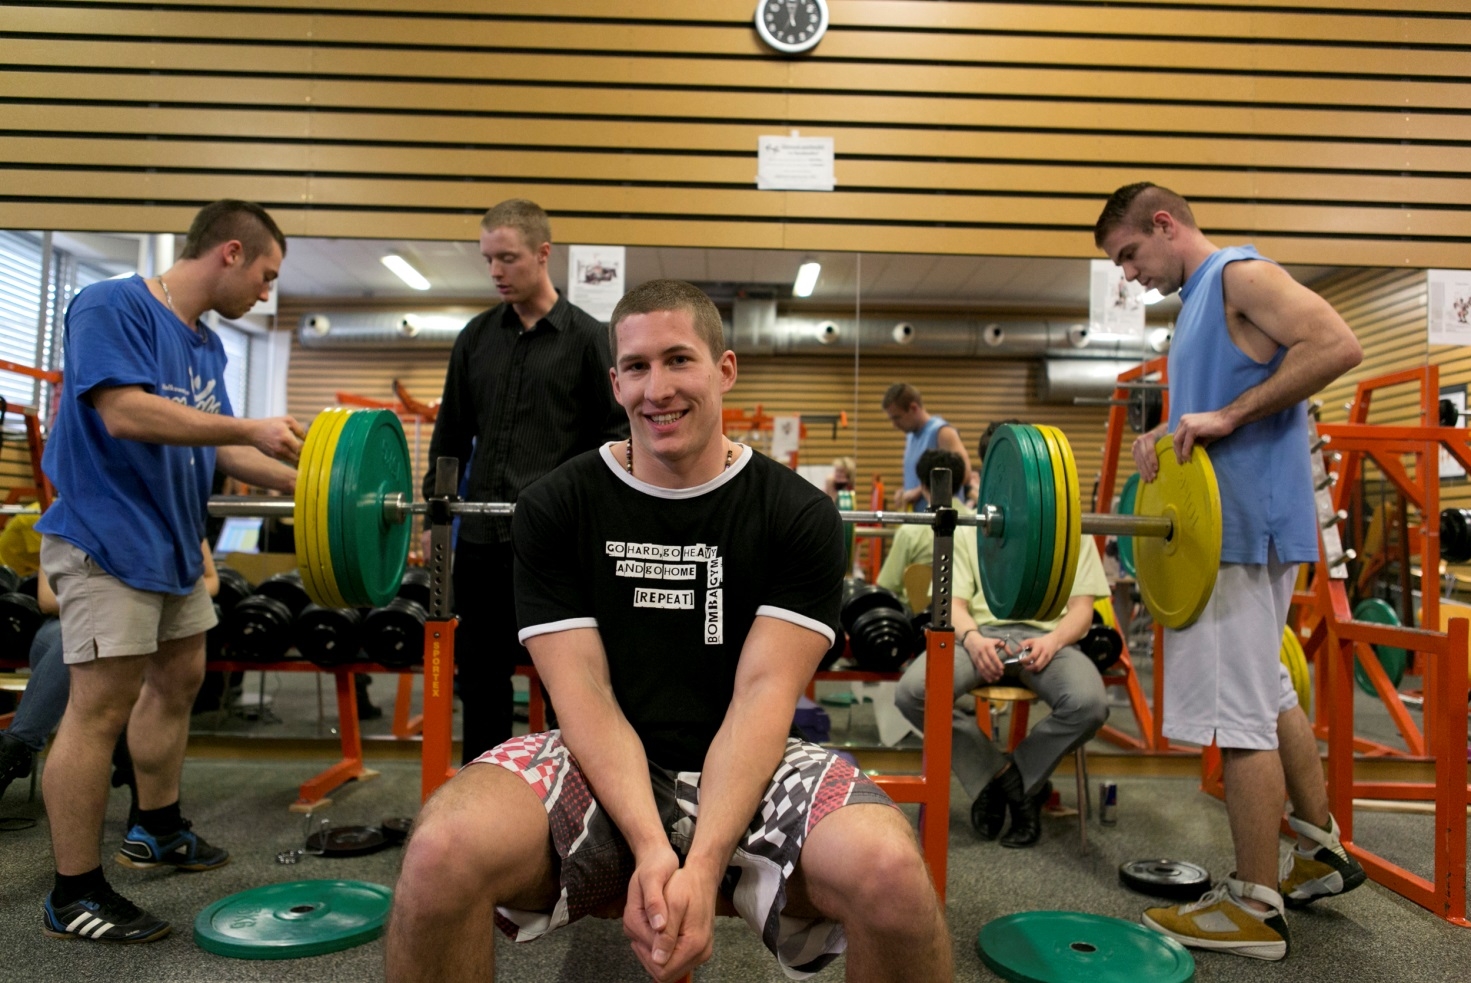 Absolutní vítěz Marek Zych před pokusem na 155 kg. Jeho kulišácký kukuč naznačuje, že si je svým úspěchem jistý. Foto: Jan Herch